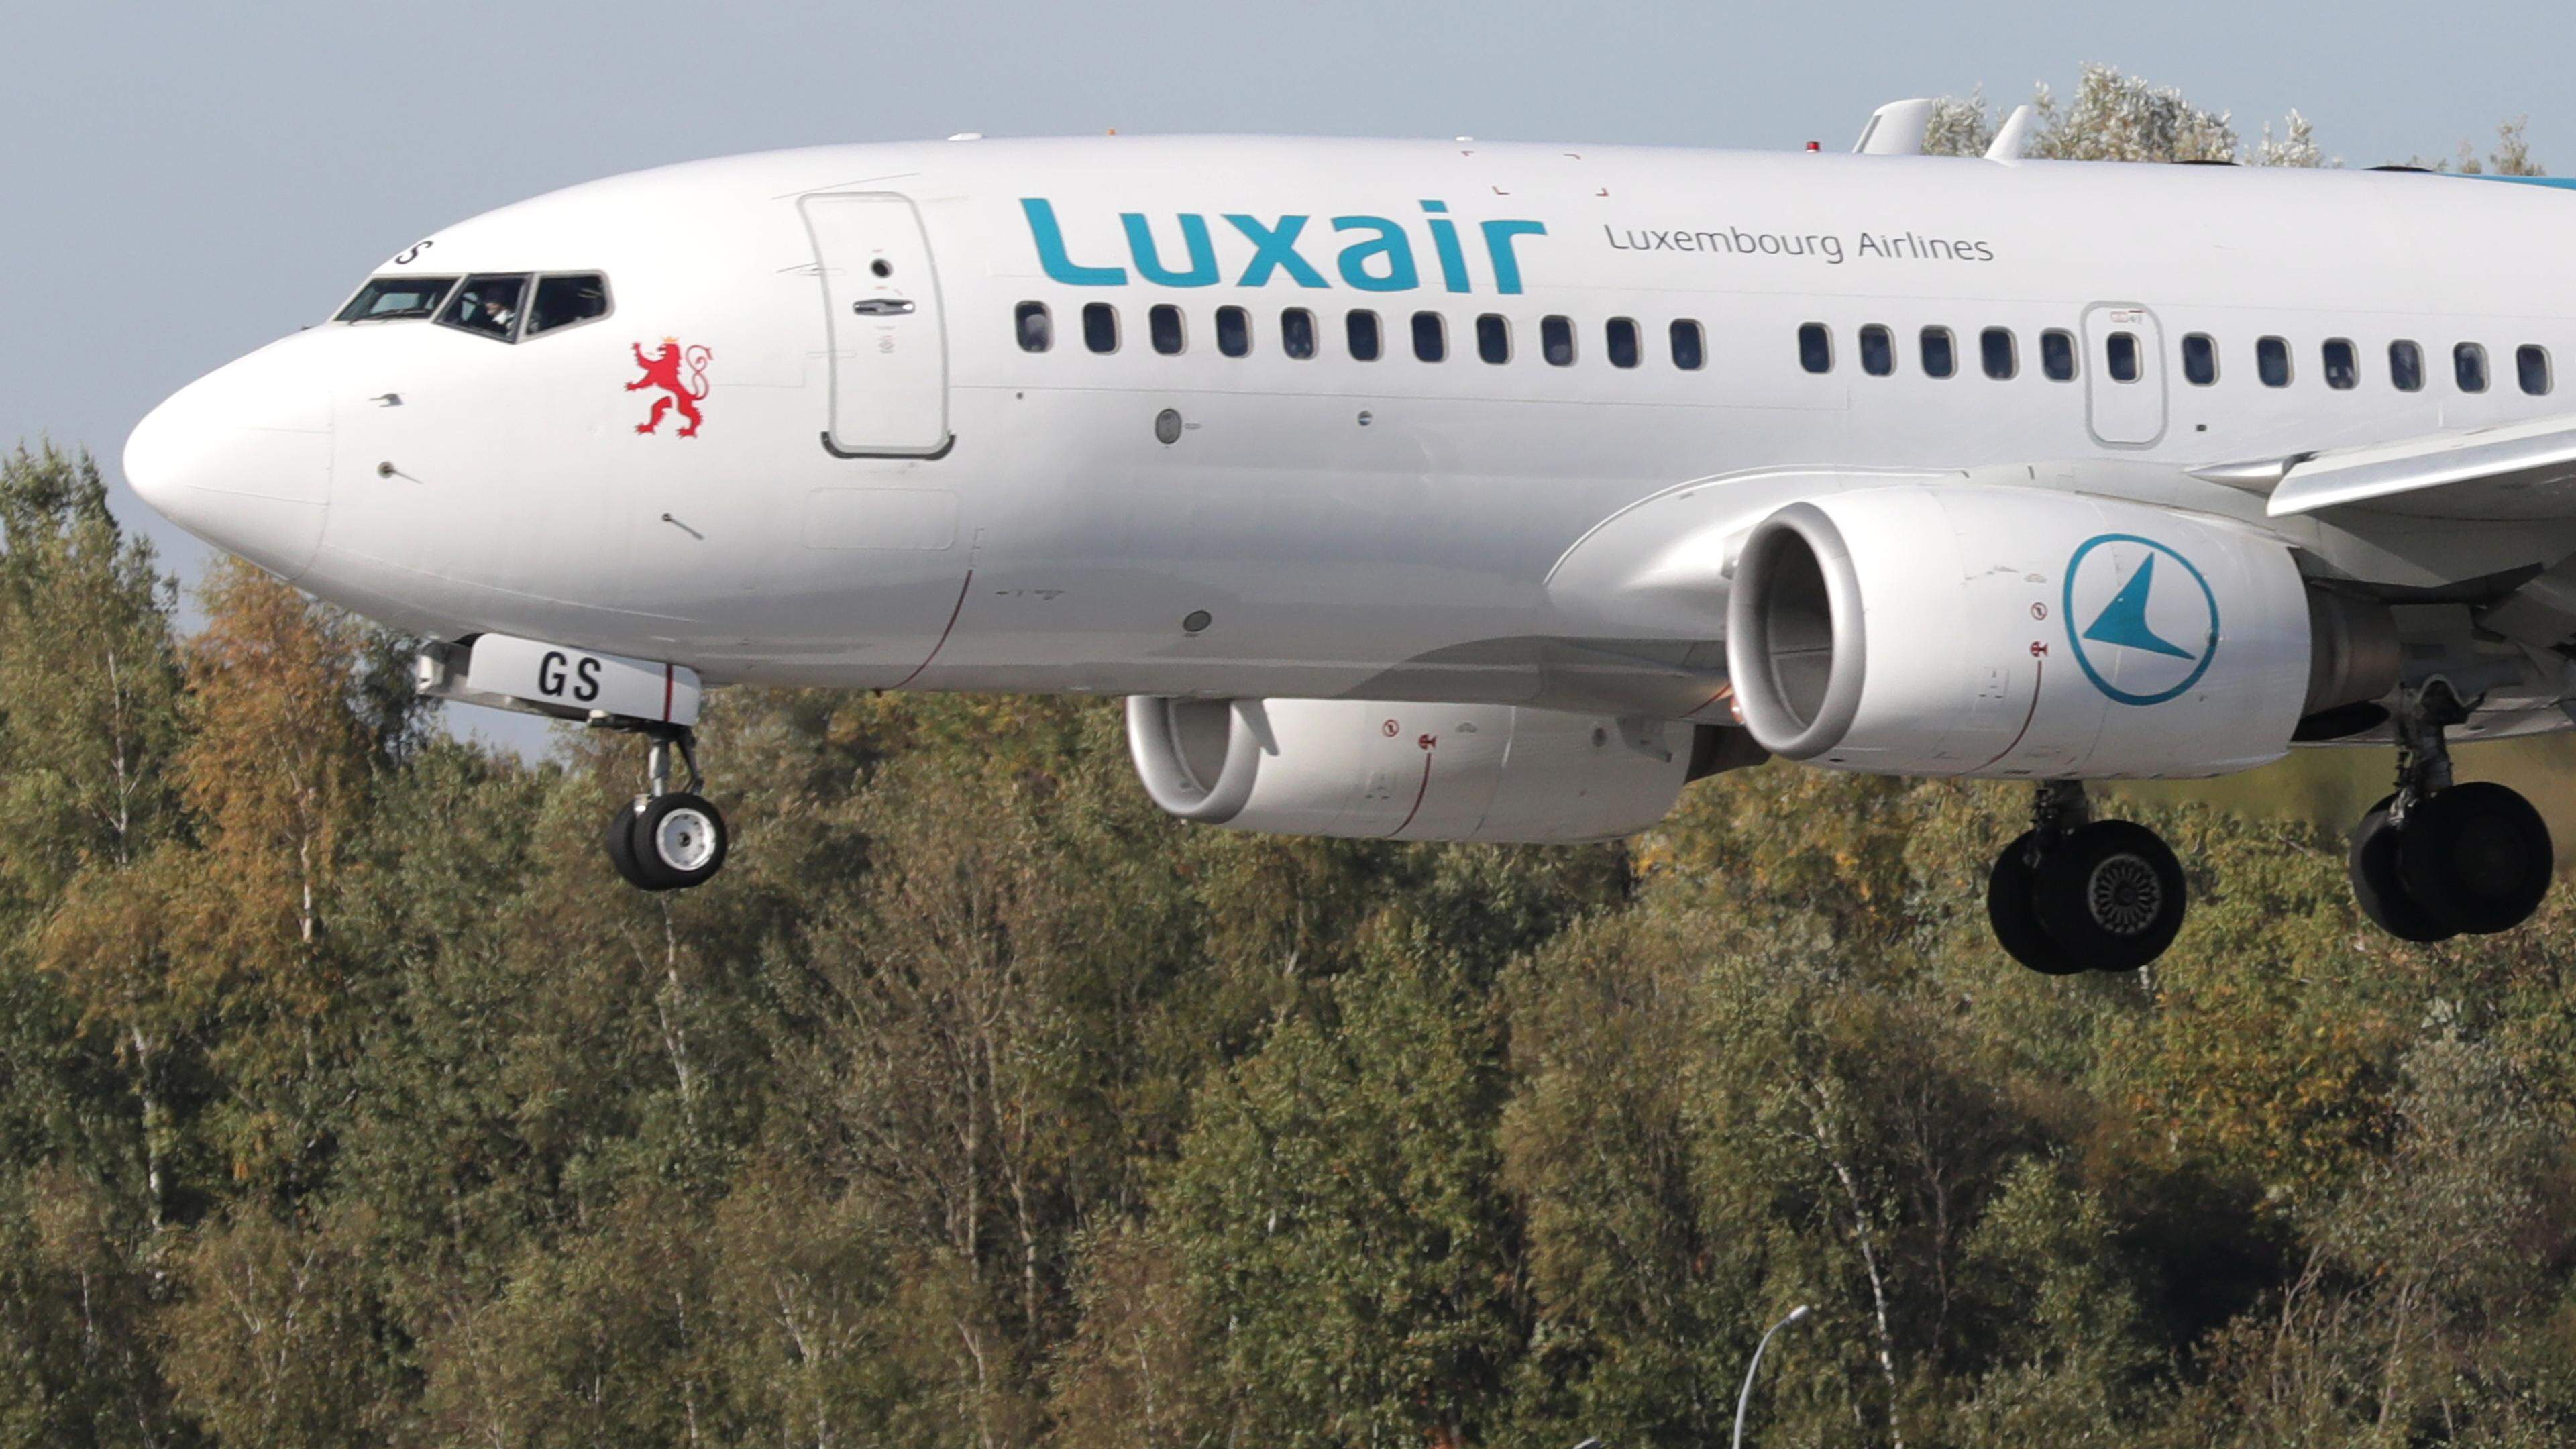 Luxair, Boeing 737-700, LX-LGF, Aéroport du Findel, Luxembourg, le 11 Octobre 2018. Photo: Chris Karaba
Aéroport, Frachtflugzeug, Avion, Cargo, Cargolux, Boeing, 747, Aéroport, Flugzeug, 